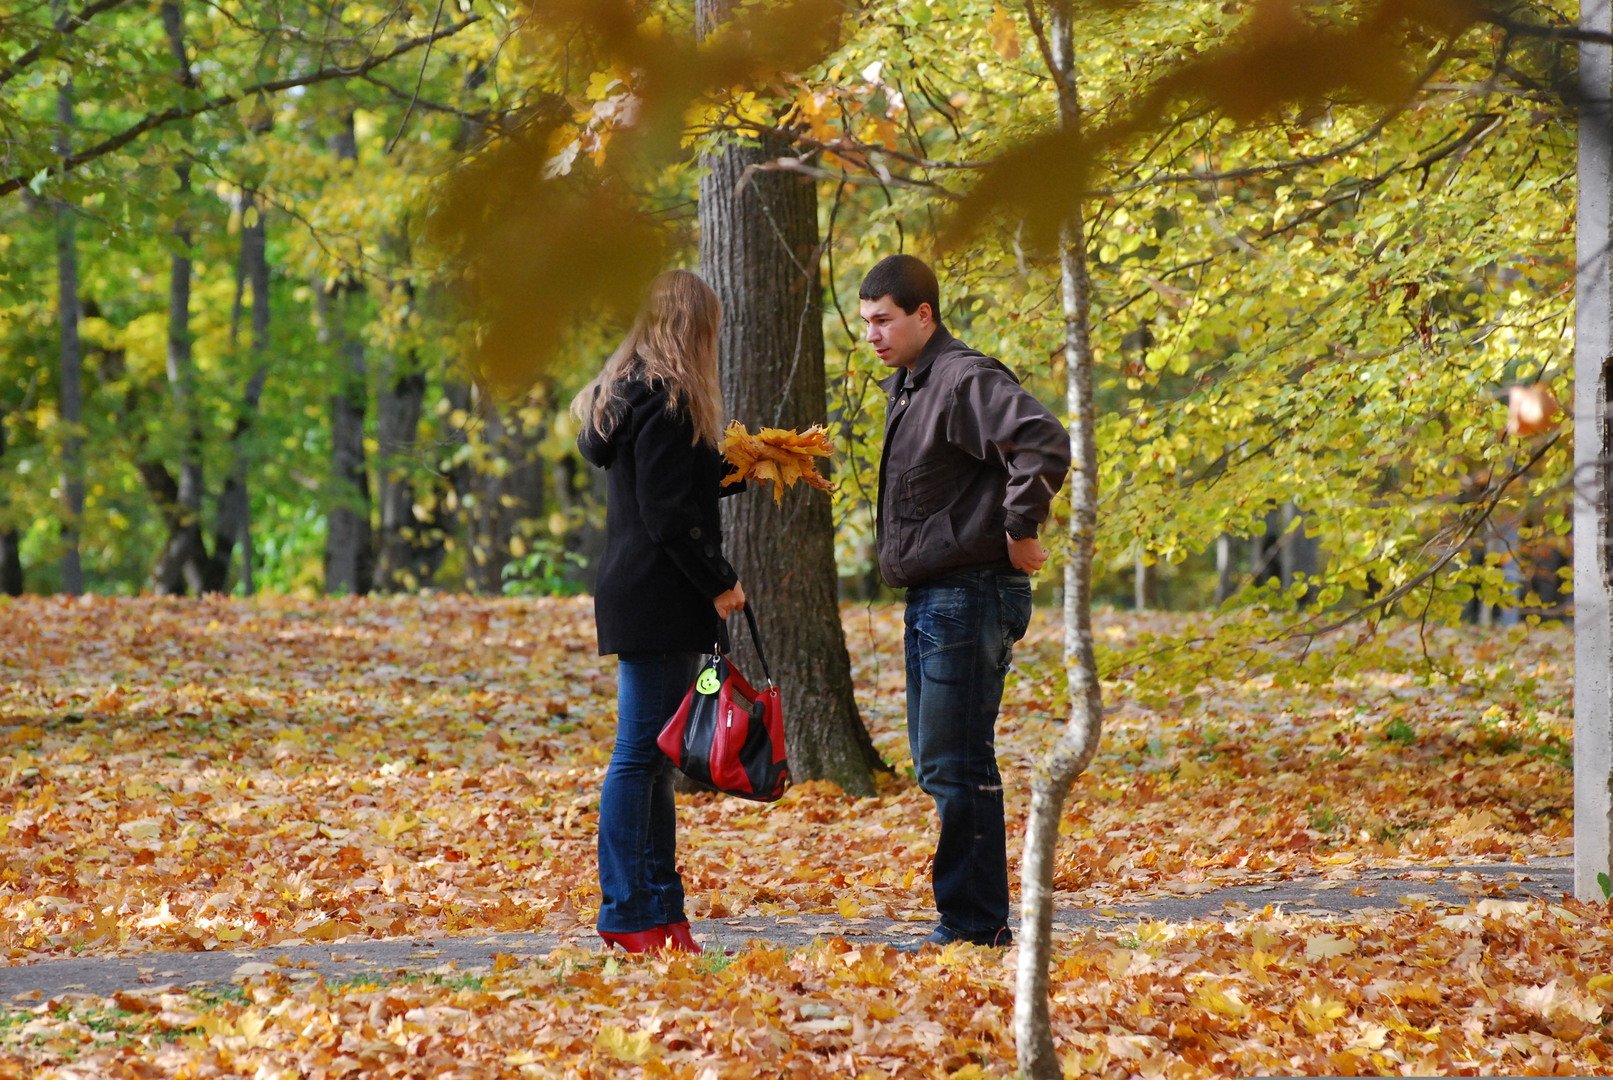 Жизнь человека осенью. Осень фото реальные с людьми. Музыкант в осеннем парке. Музыкант играет в осеннем парке.